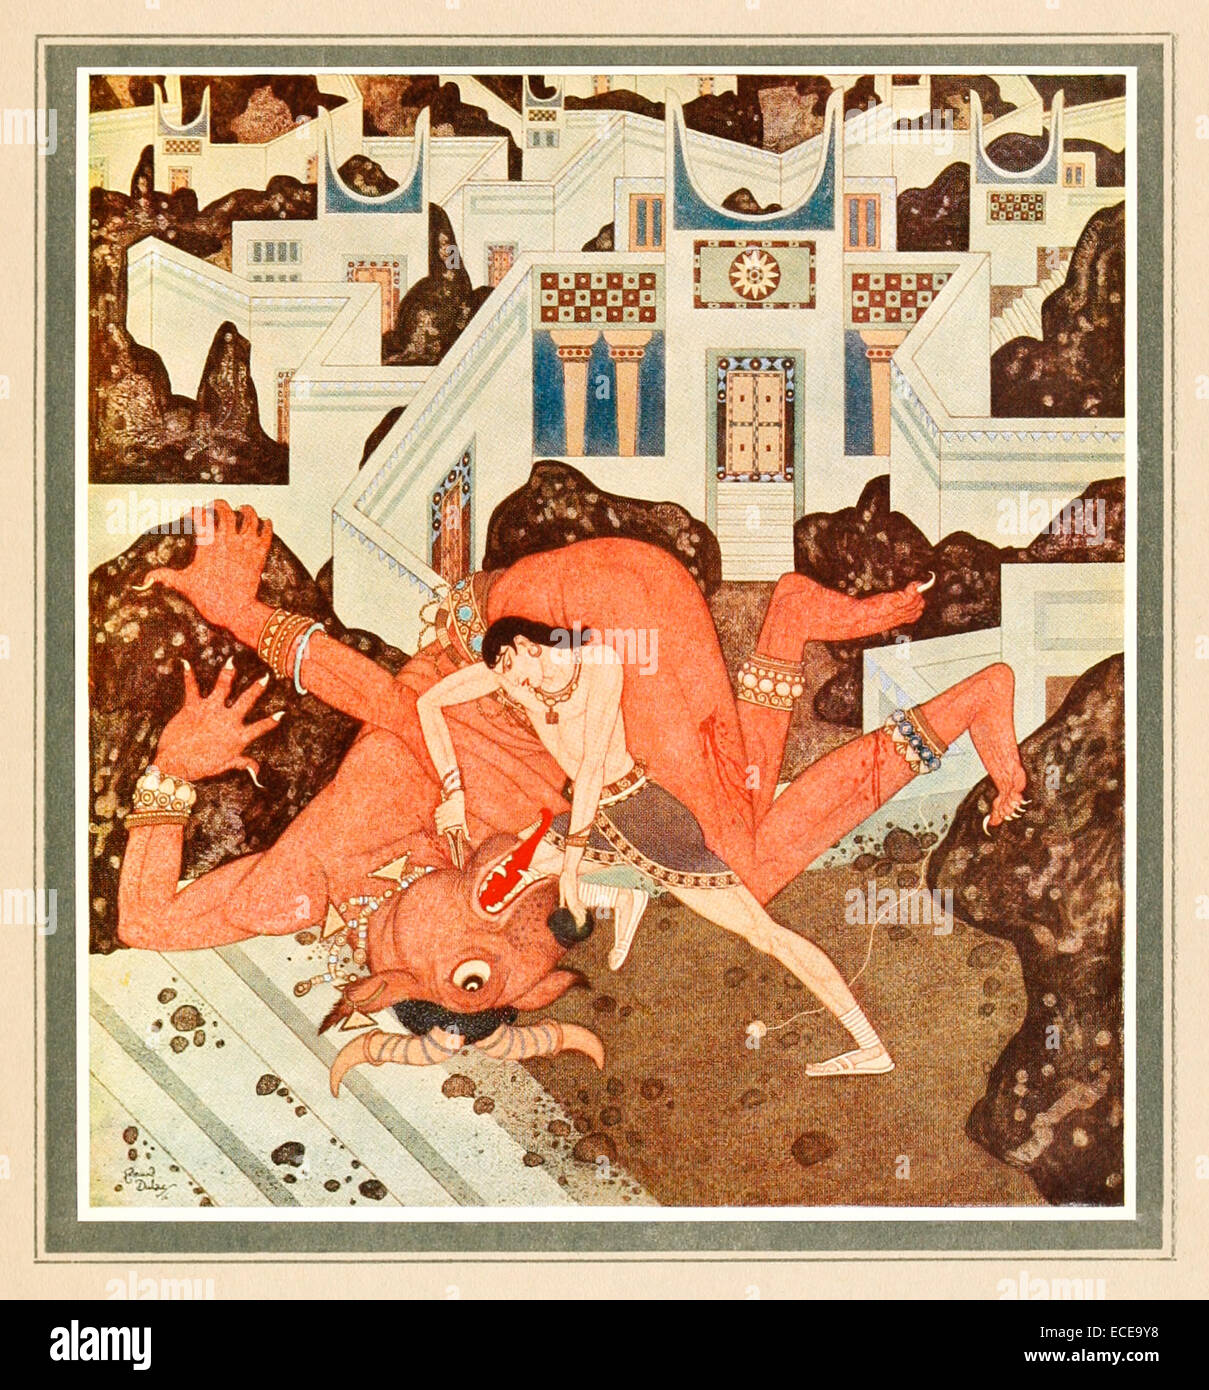 Theseus tötet den Minotaurus - Edmund Dulac Illustration aus "Tanglewood Tales". Siehe Beschreibung für mehr Informationen. Stockfoto